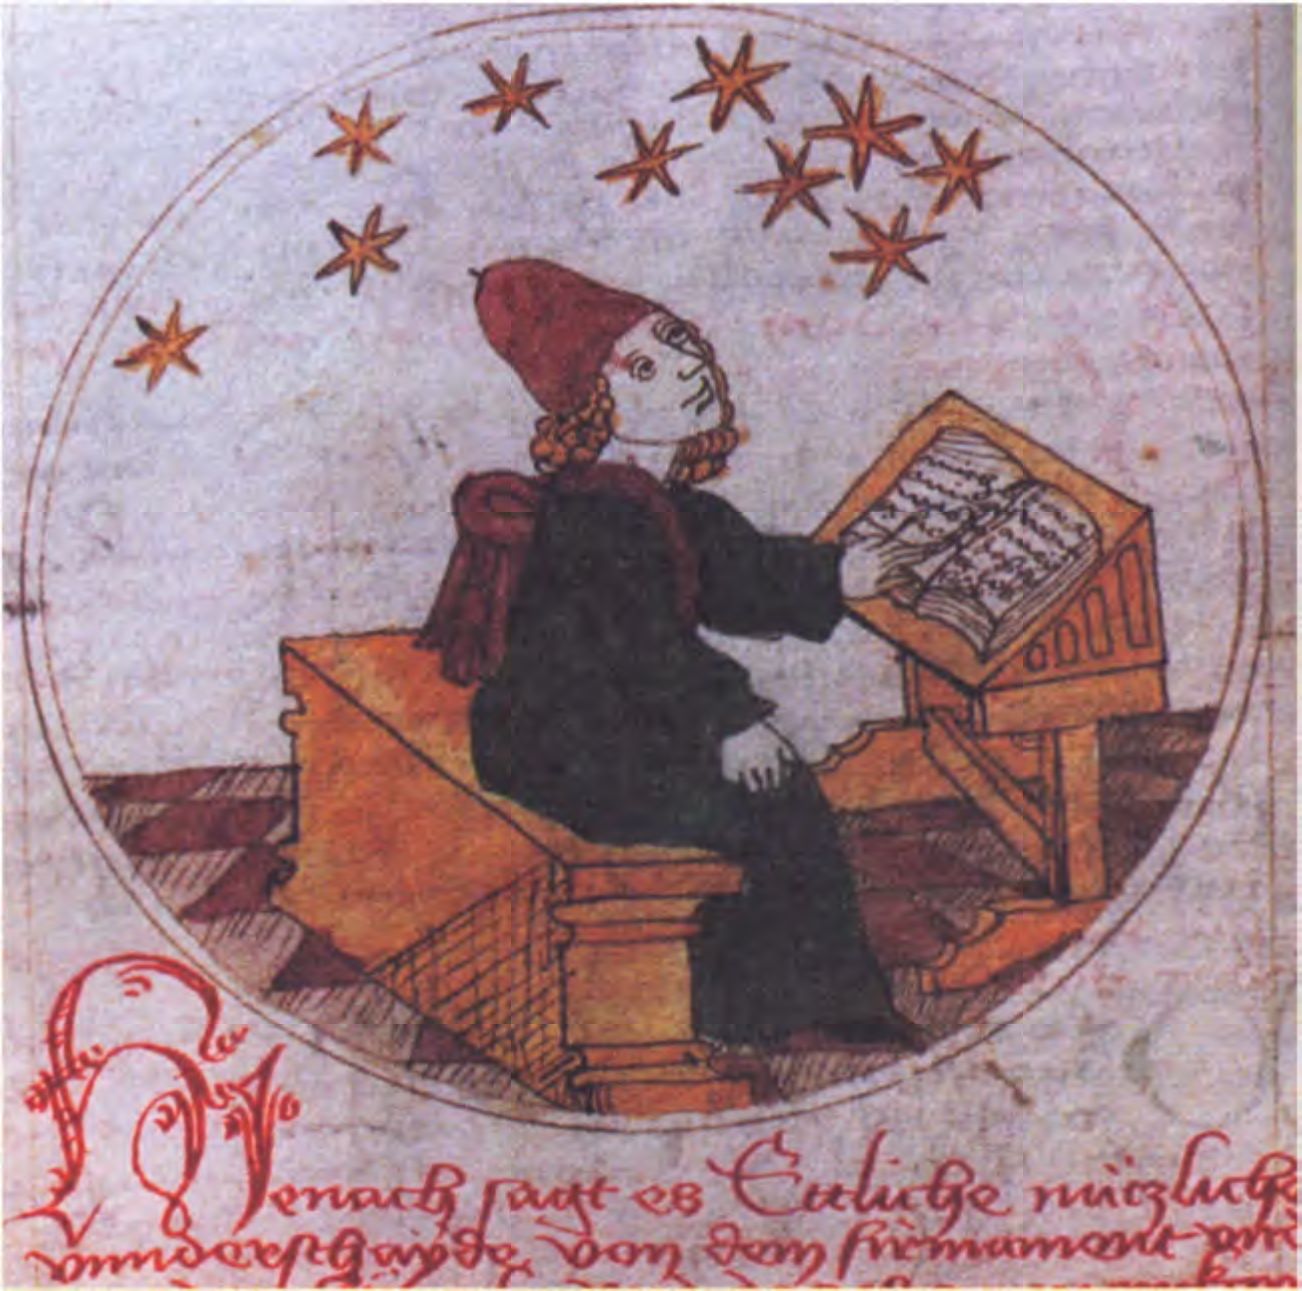 Астролог за работой, со своими книгами и звездами над ним. На самом деле средневековый астролог редко изучал звезды сам, чаще он пользовался данными уже готовых таблиц. (Королевская Обсерватория. Эдинбург)